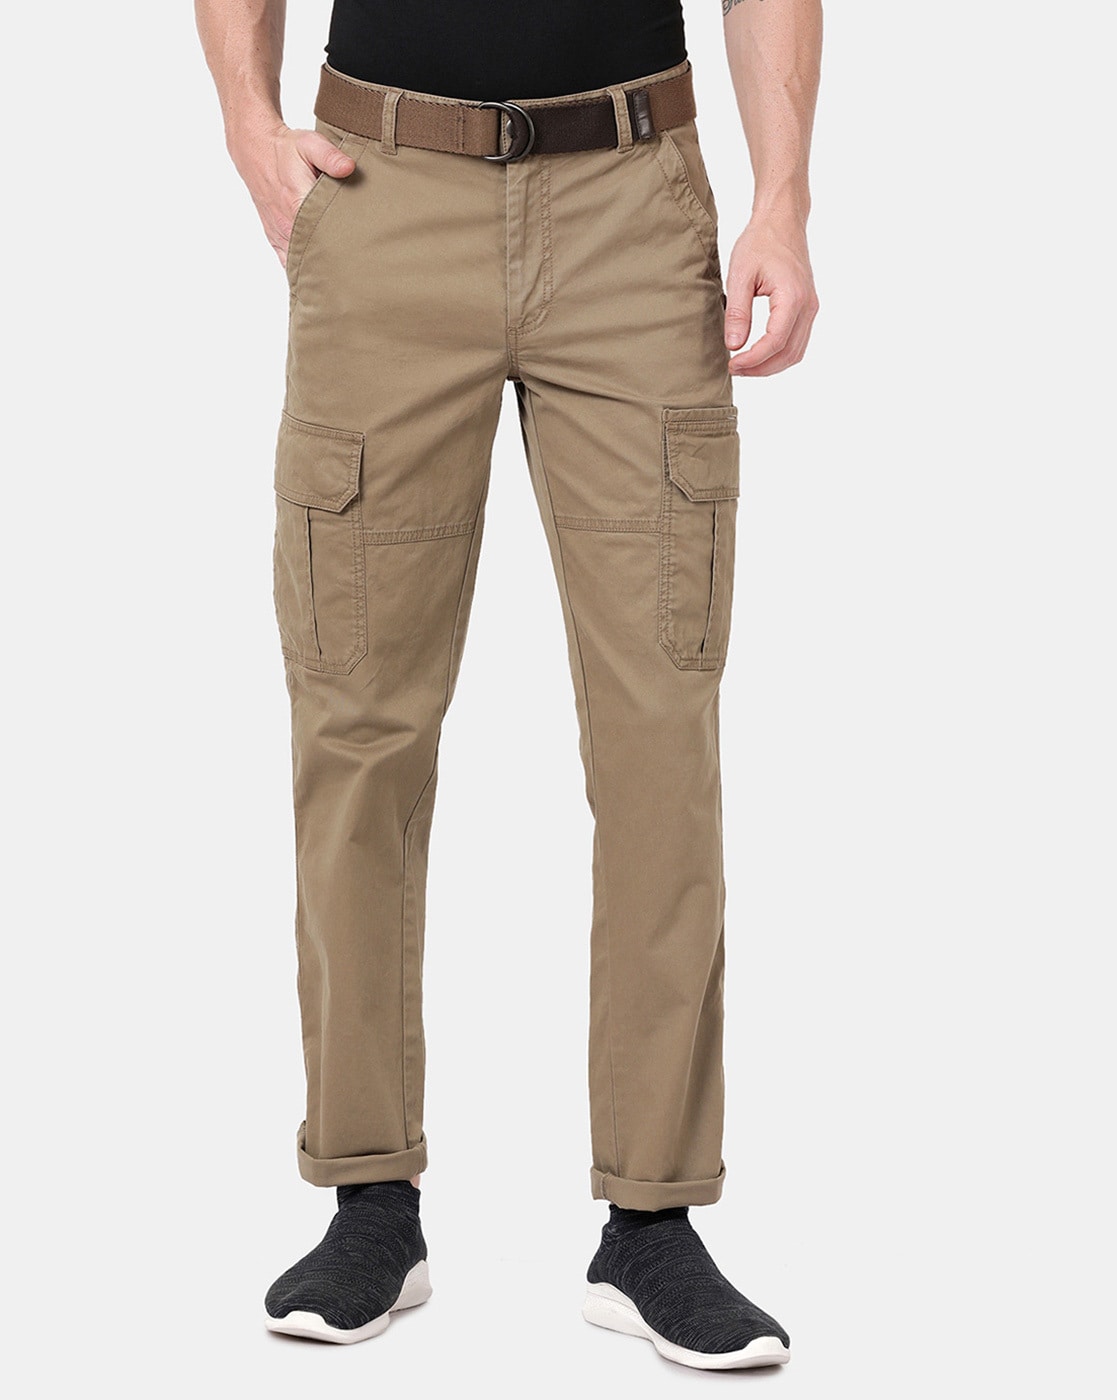 Buy Khaki Trousers  Pants for Men by ECKO UNLTD Online  Ajiocom